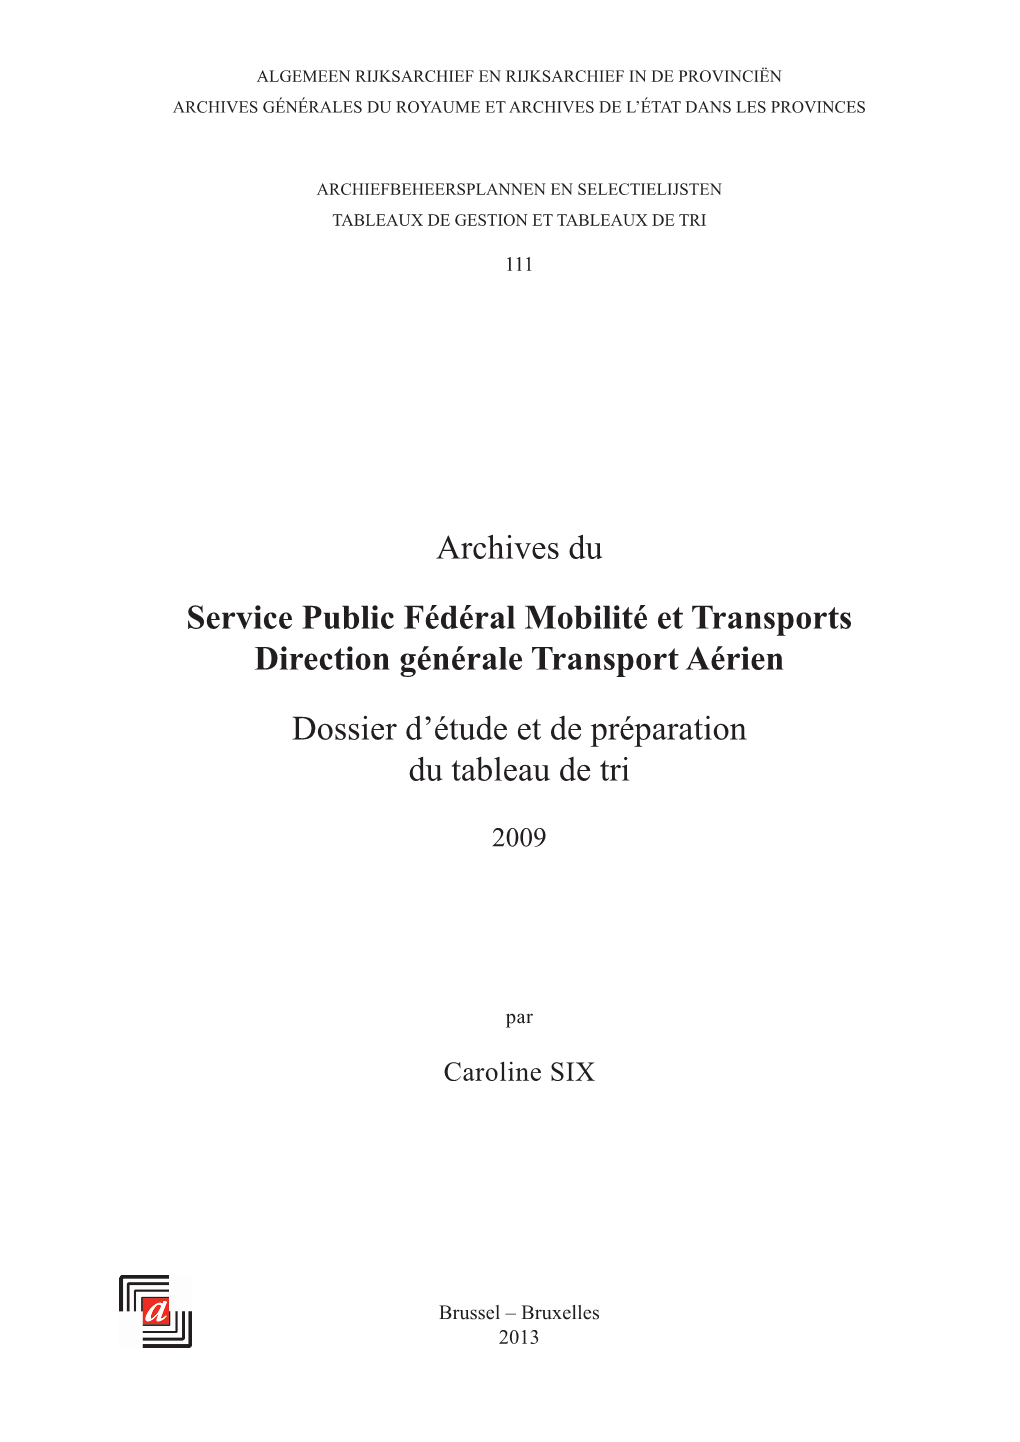 Archives Du Service Public Fédéral Mobilité Et Transports Direction